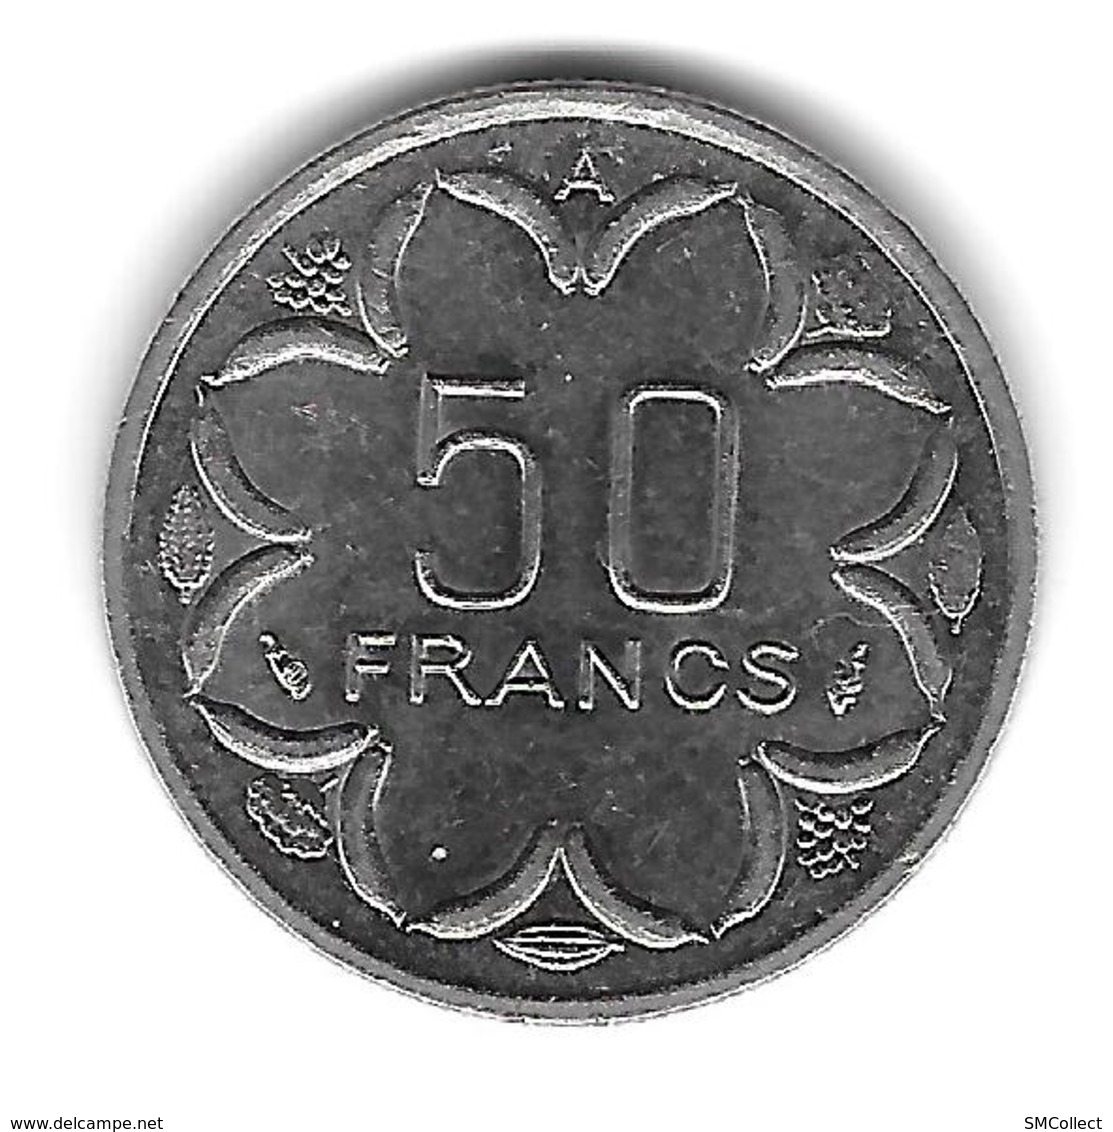 Etats De L'Afrique Centrale. 50 Francs 1991 Lettre A (Tchad) - (1296) - Tschad